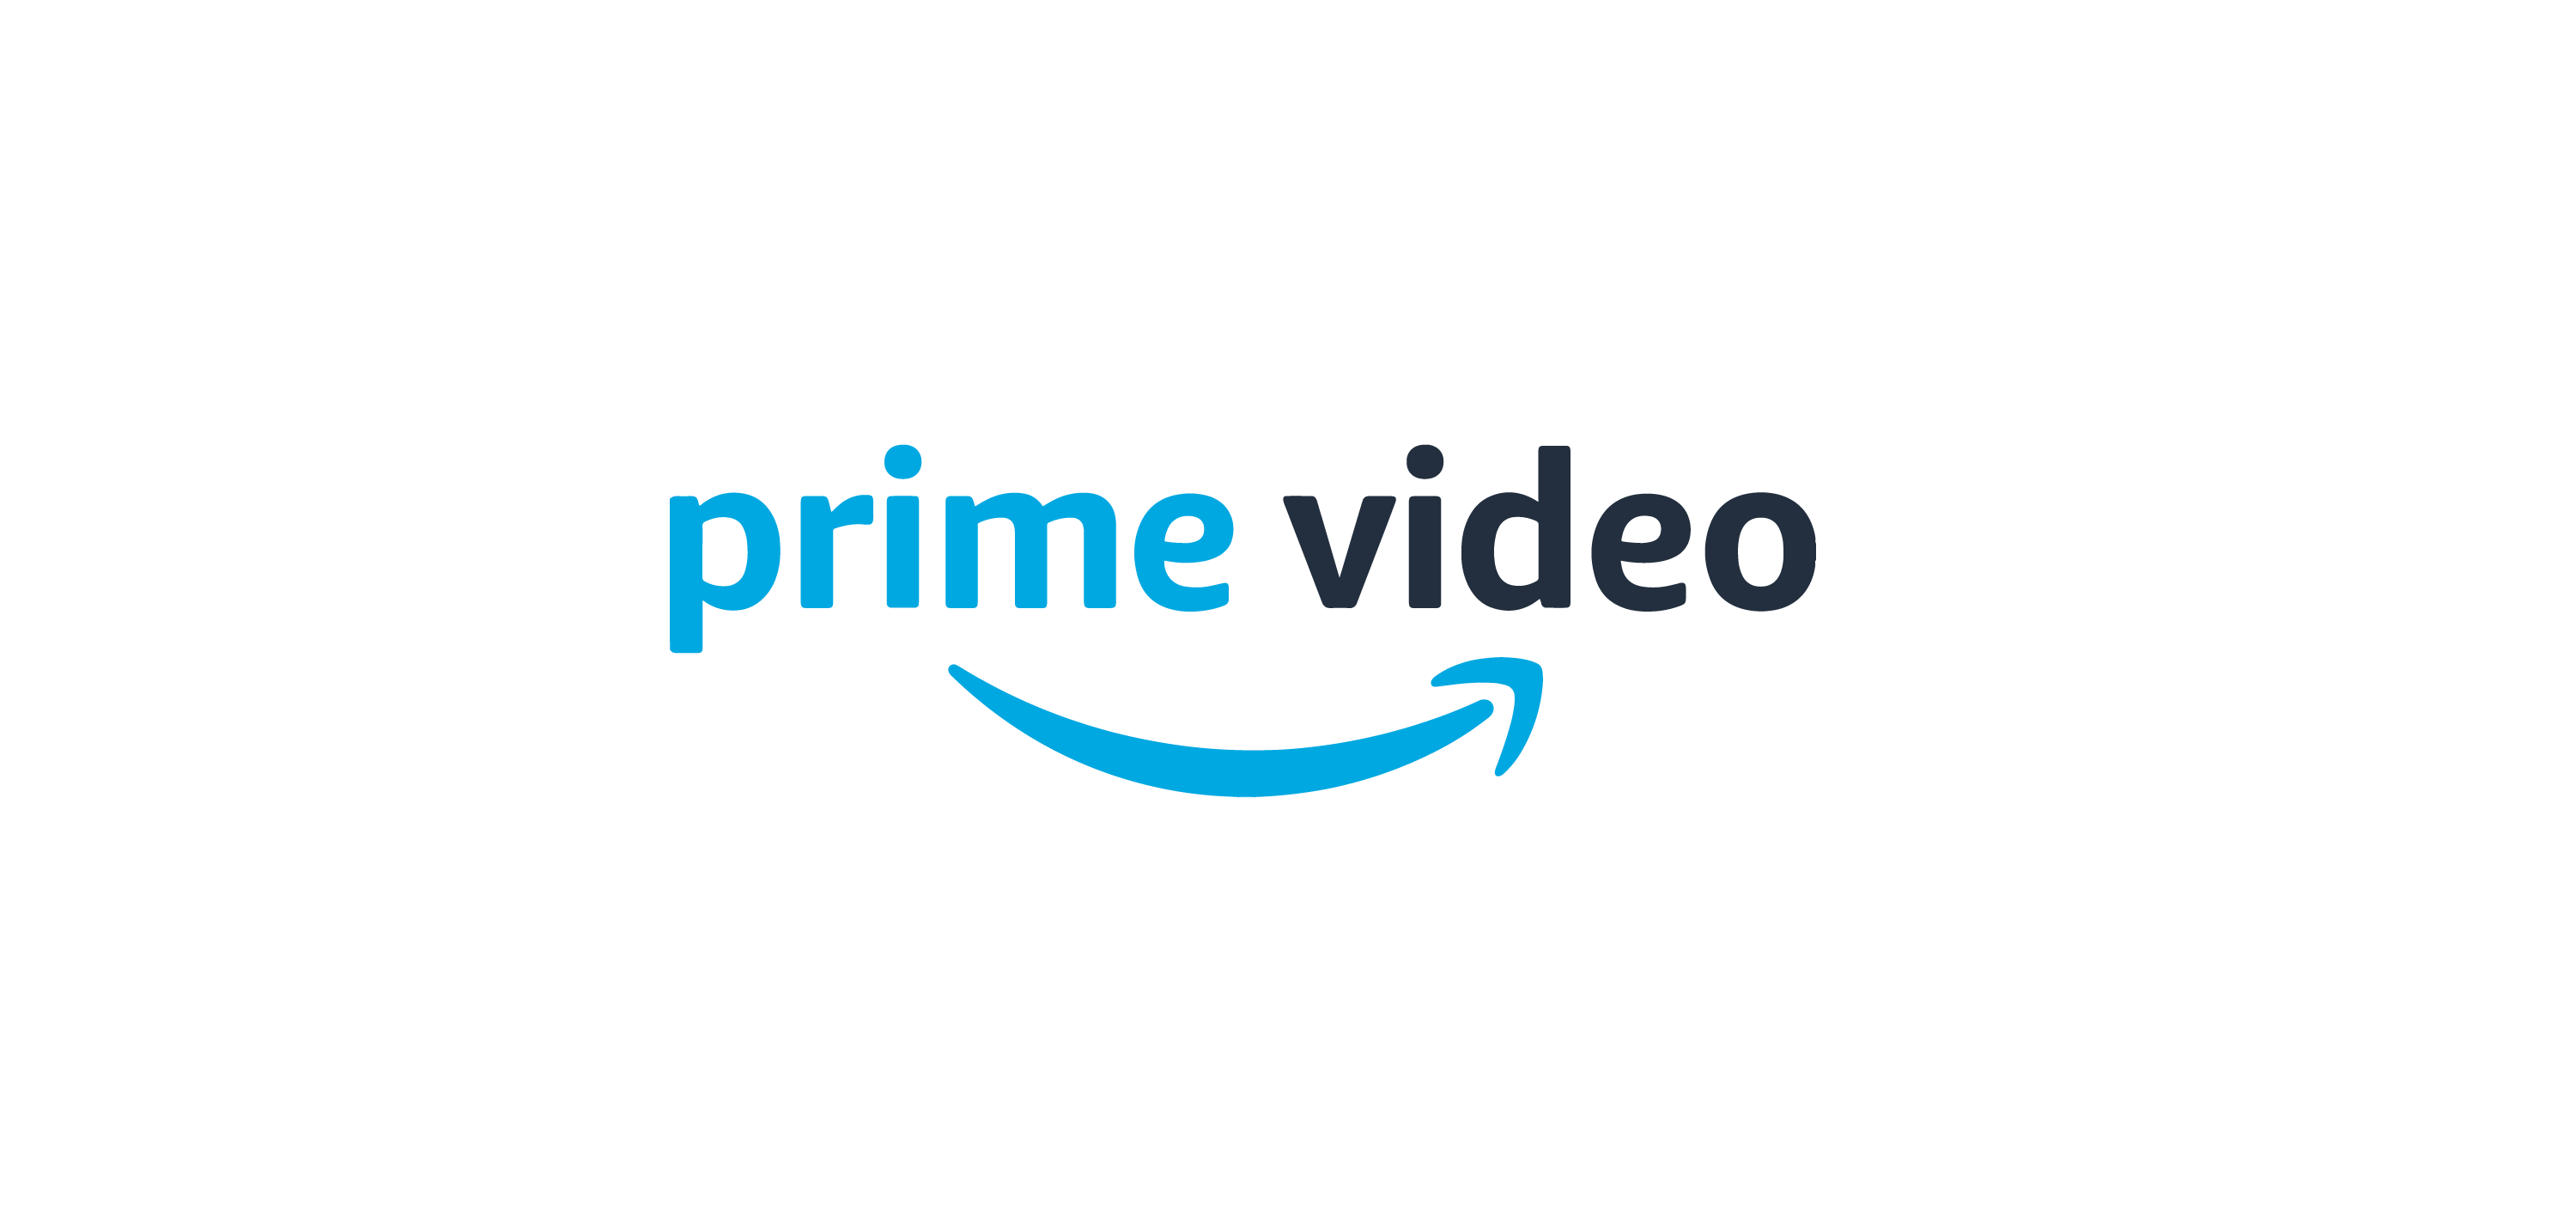 Amazon Prime Video logo vector